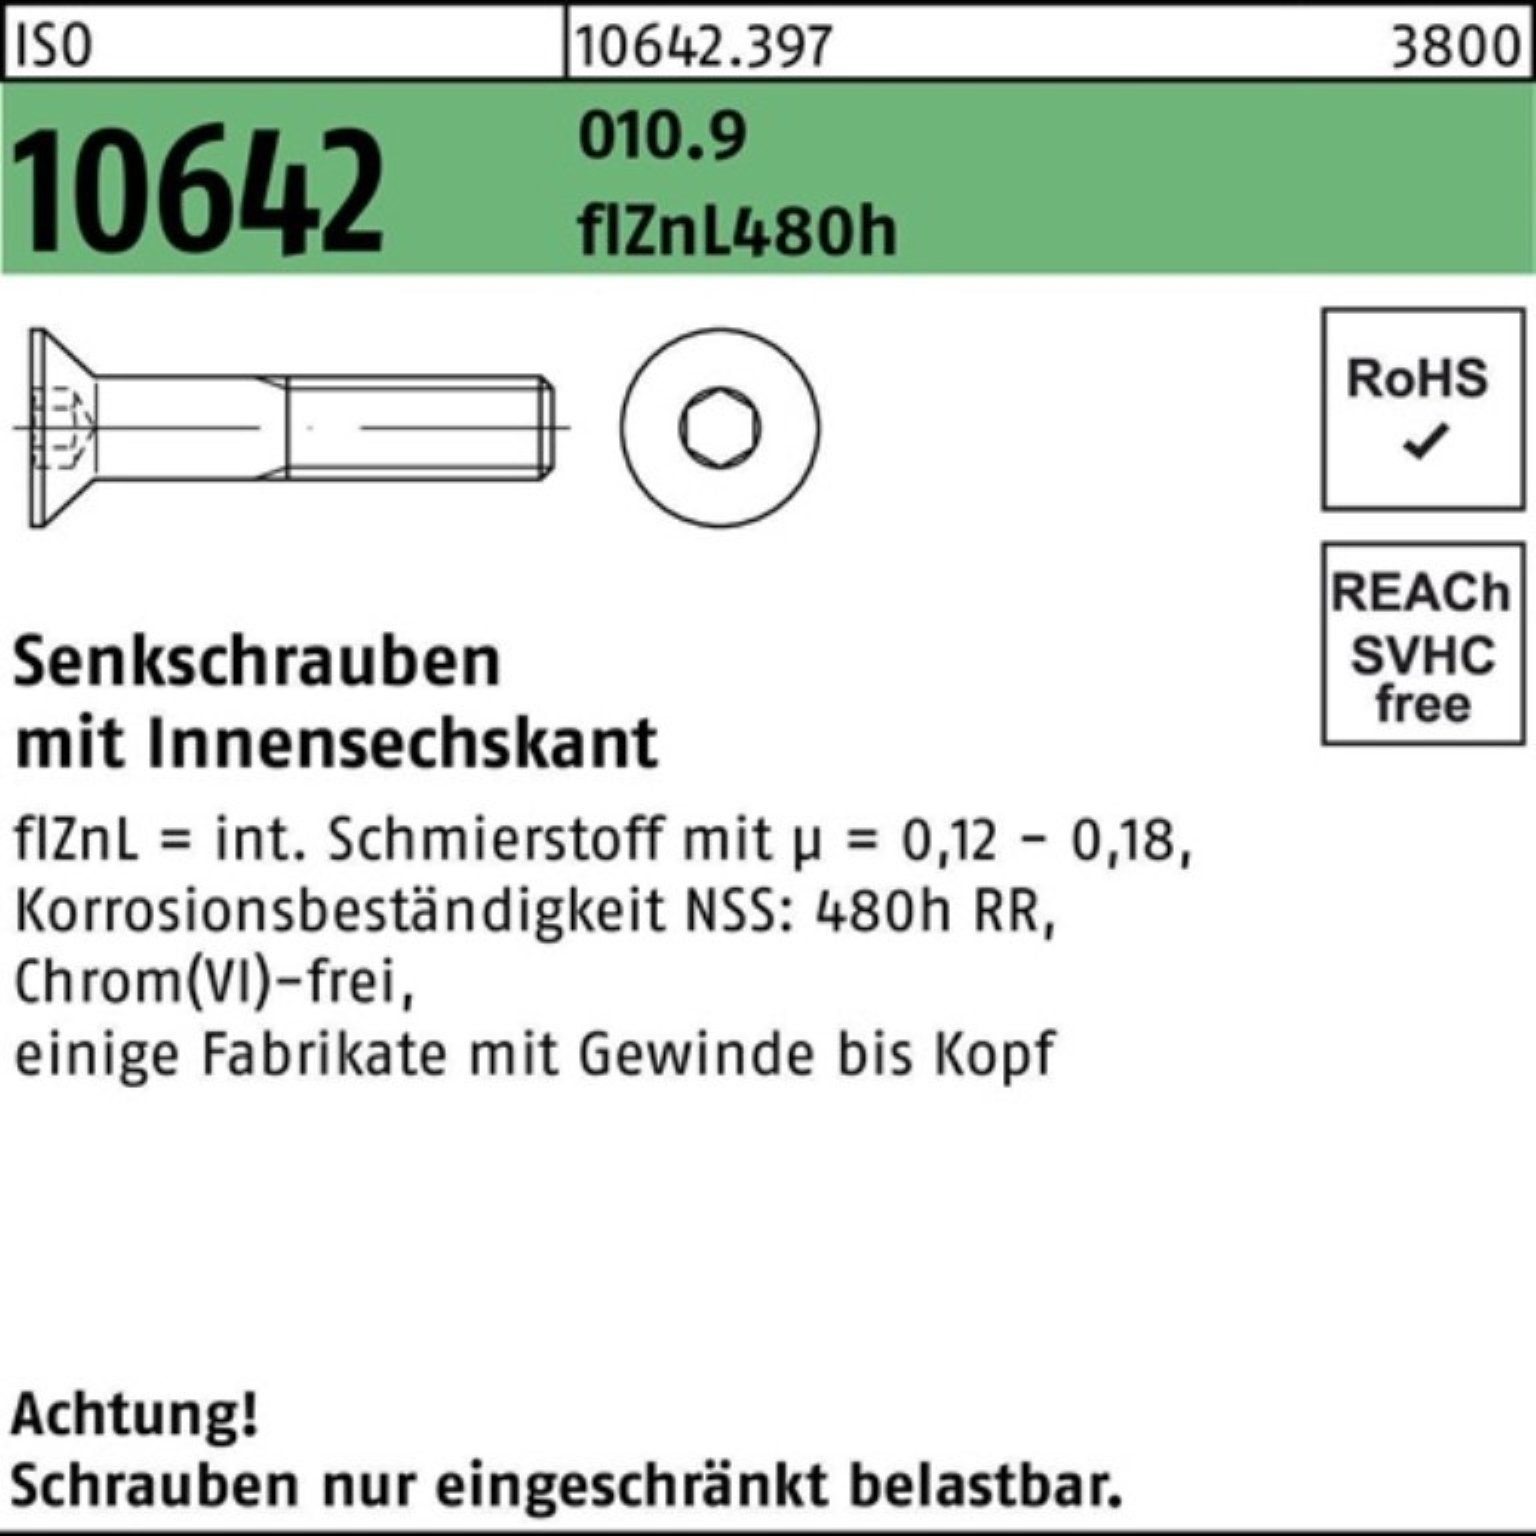 10642 ISO 480h Senkschraube flZnL Reyher zi Pack 010.9 100er Innen-6kt Senkschraube M16x40